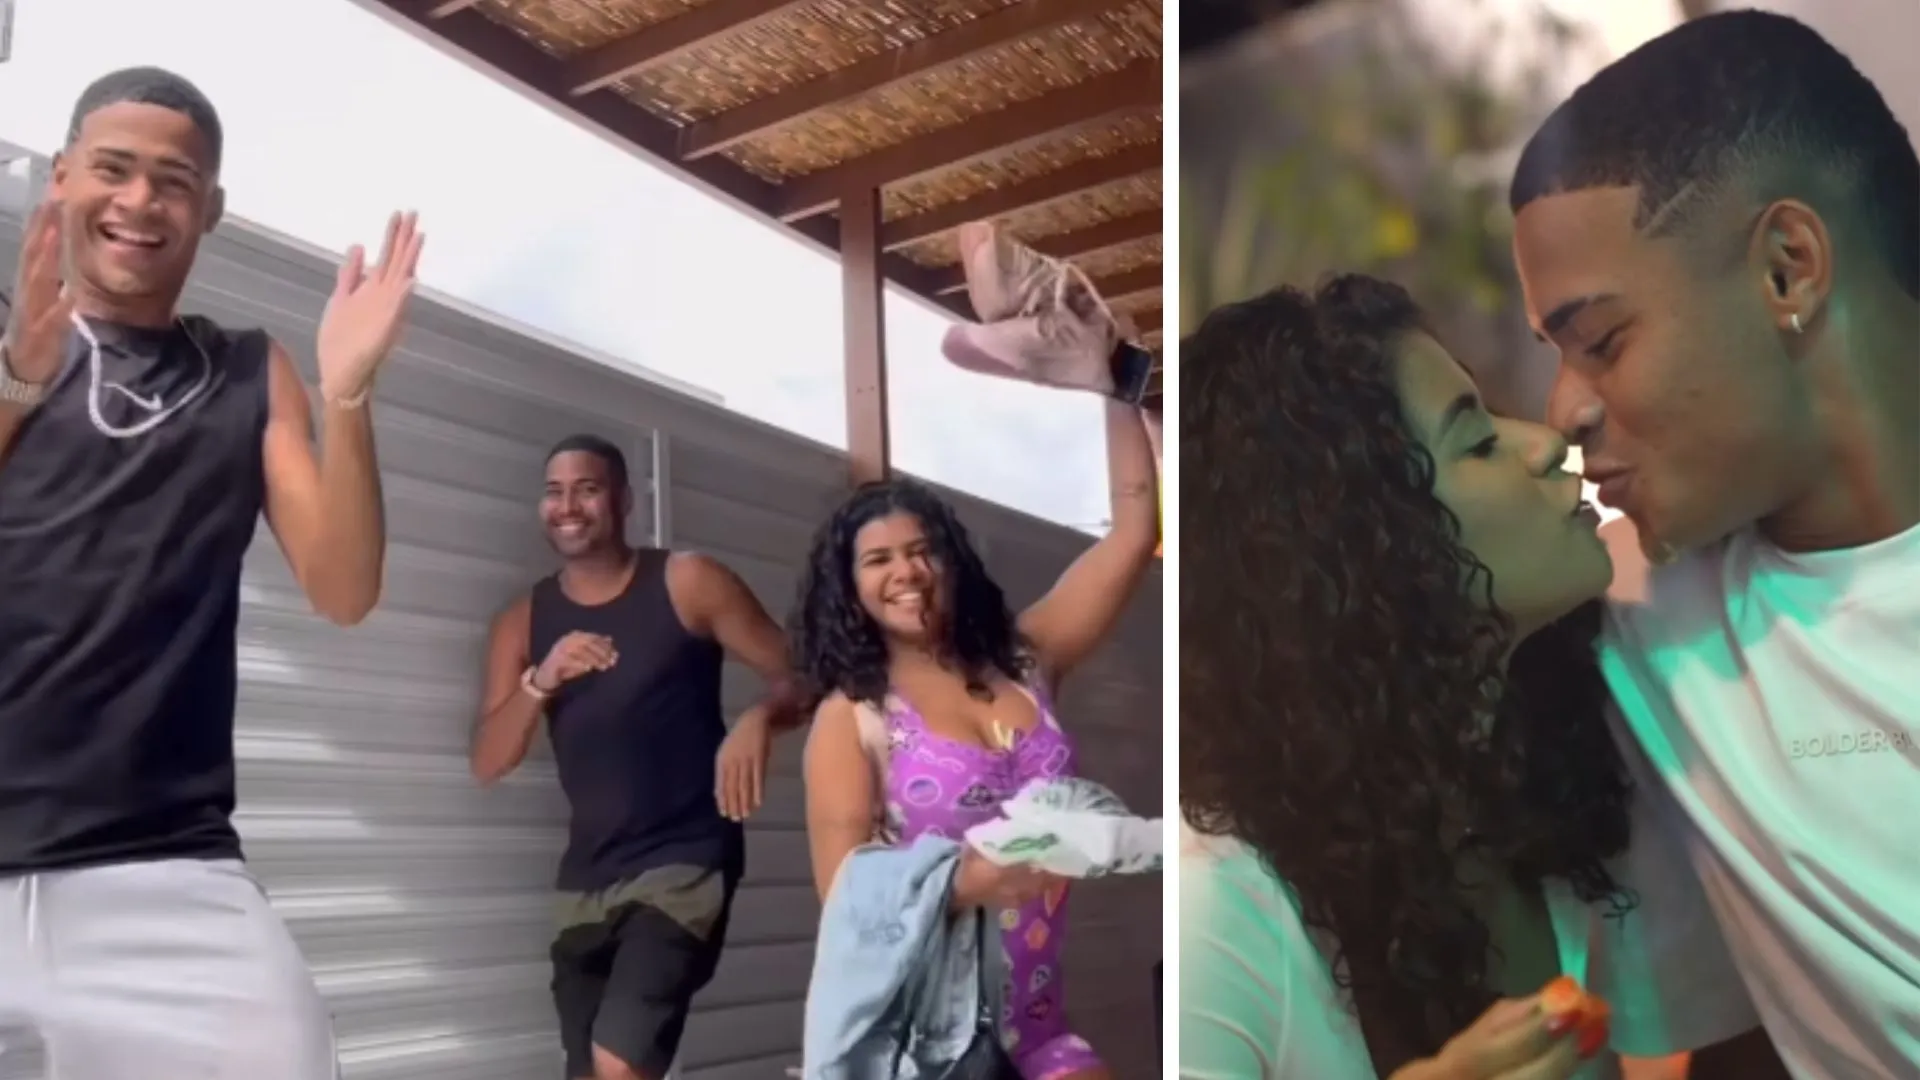 Sheuba e Tiago gravam vídeos juntos em meio a polêmica